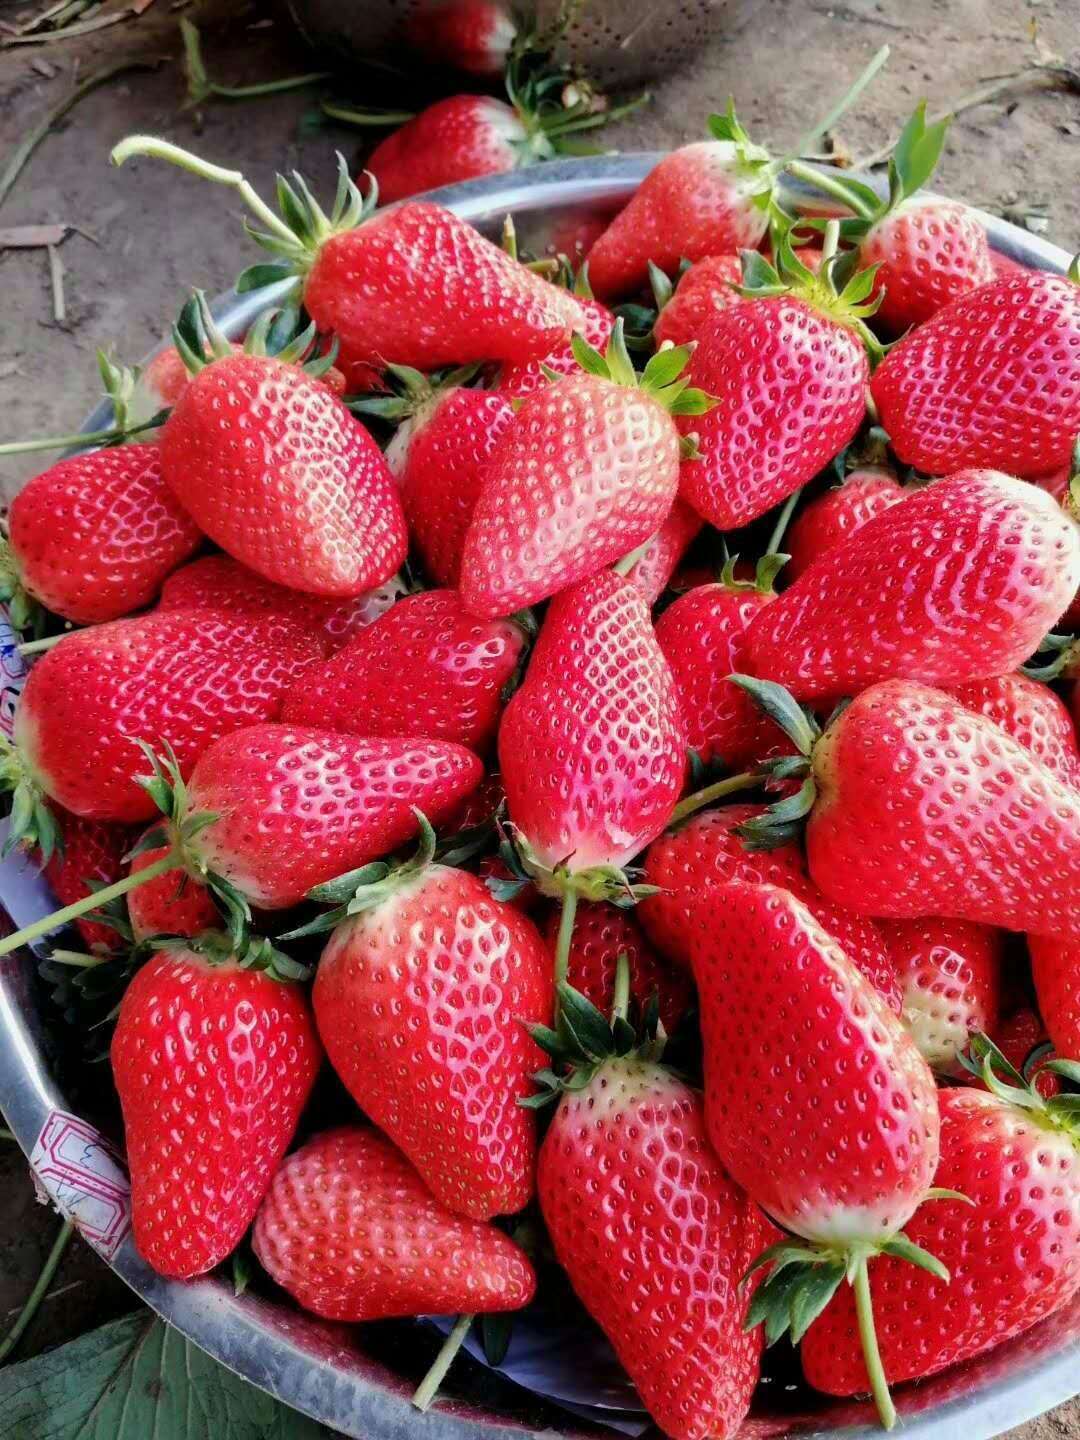 天仙醉草莓苗多少钱一株、上海嘉定天仙醉草莓苗报价